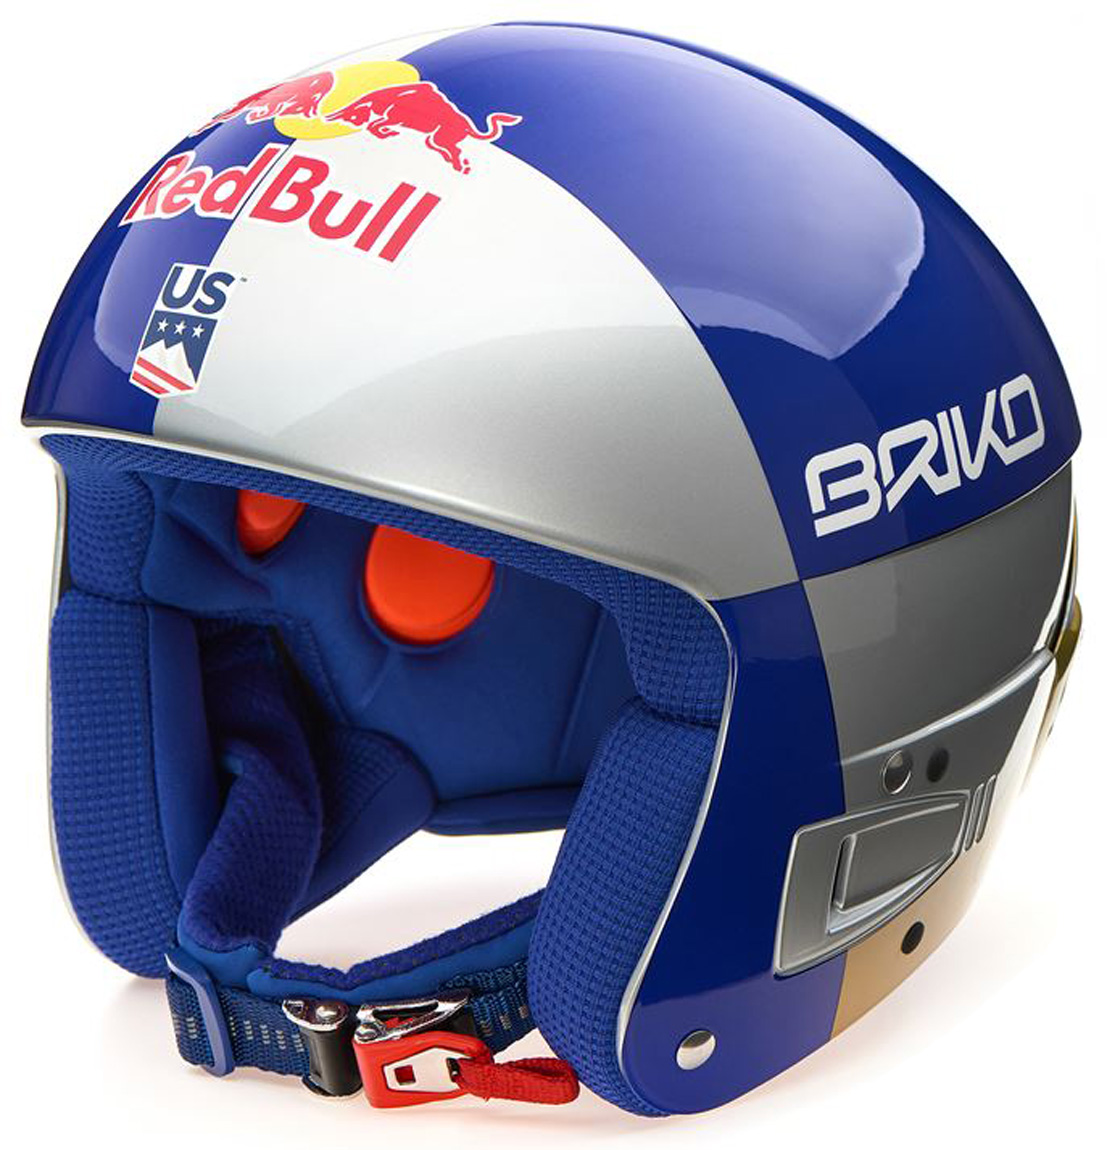 Pánská lyžařská helma